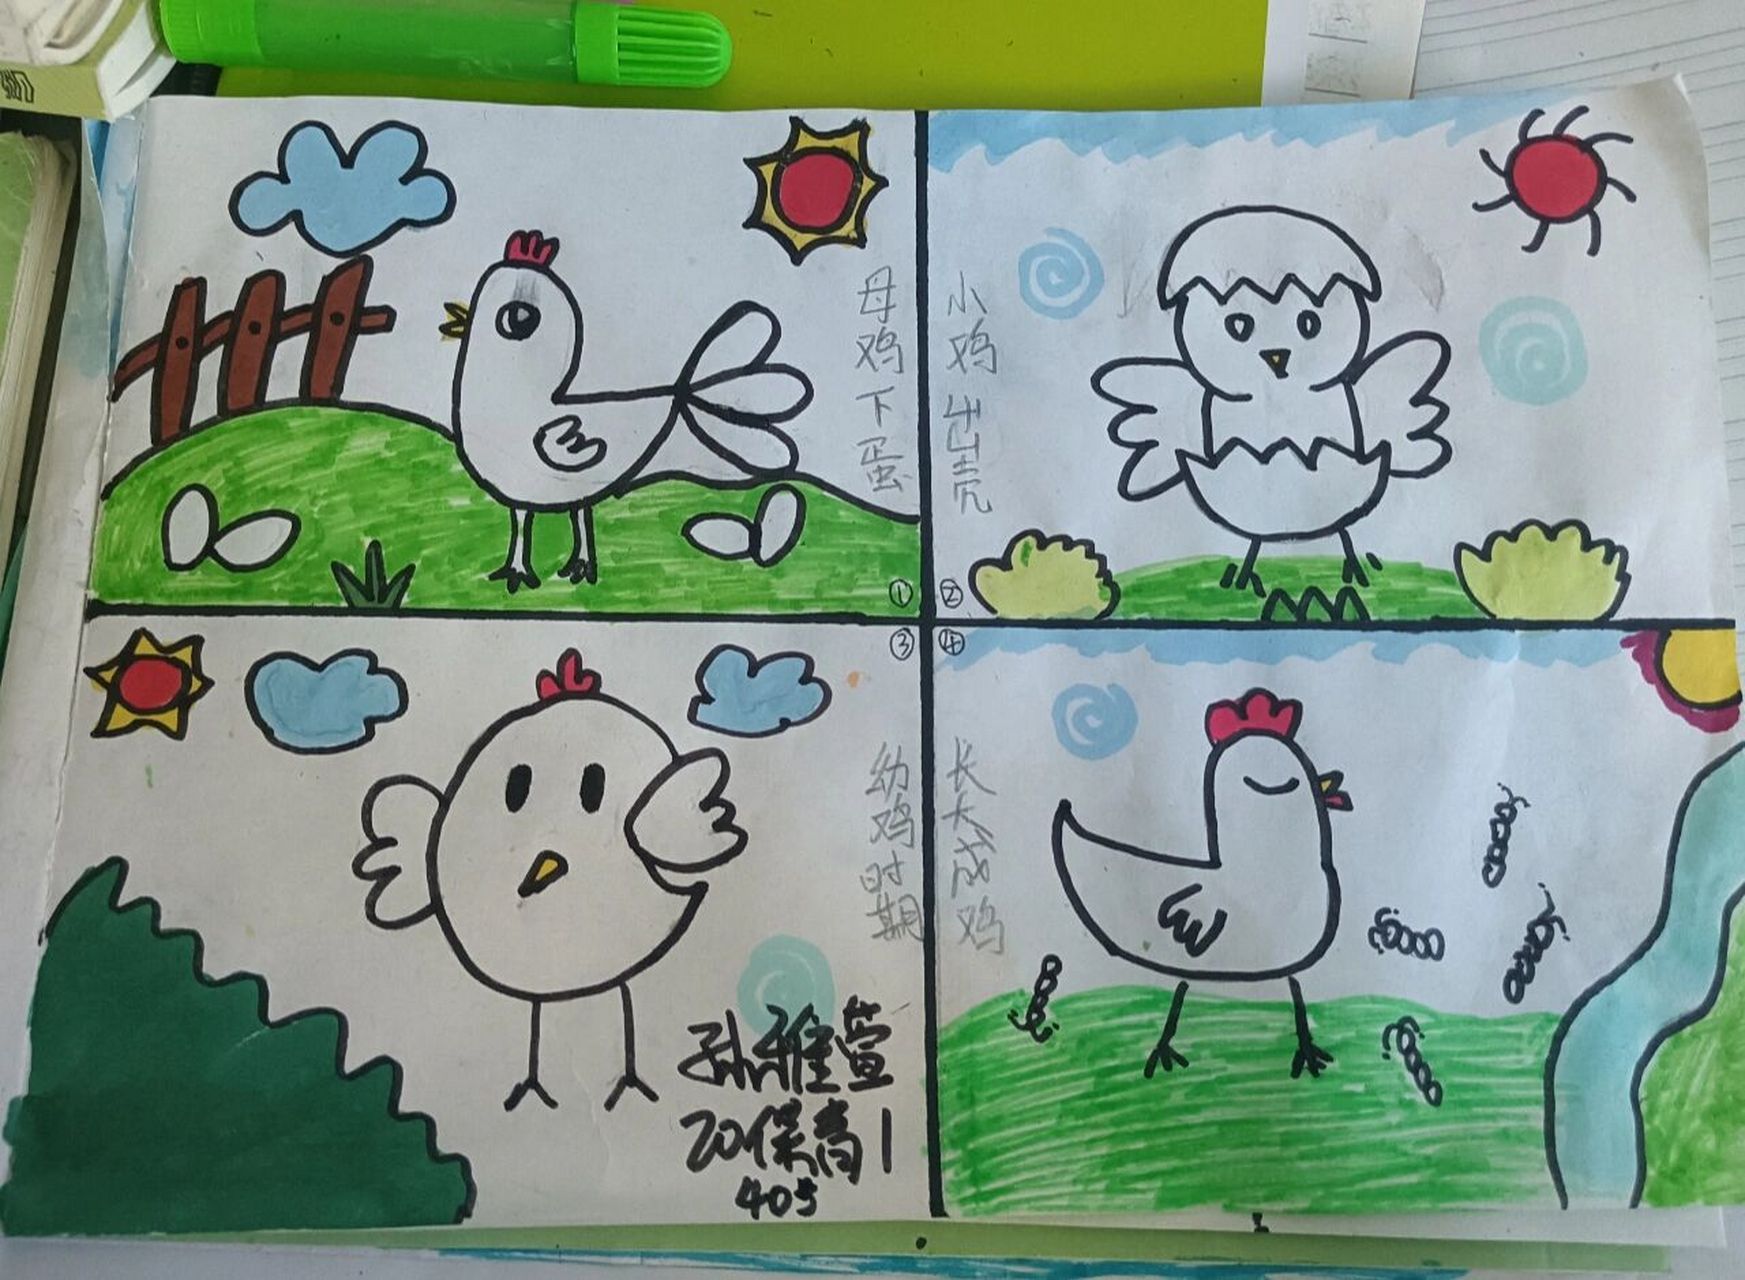 鸡妈妈和小鸡的简笔画图片